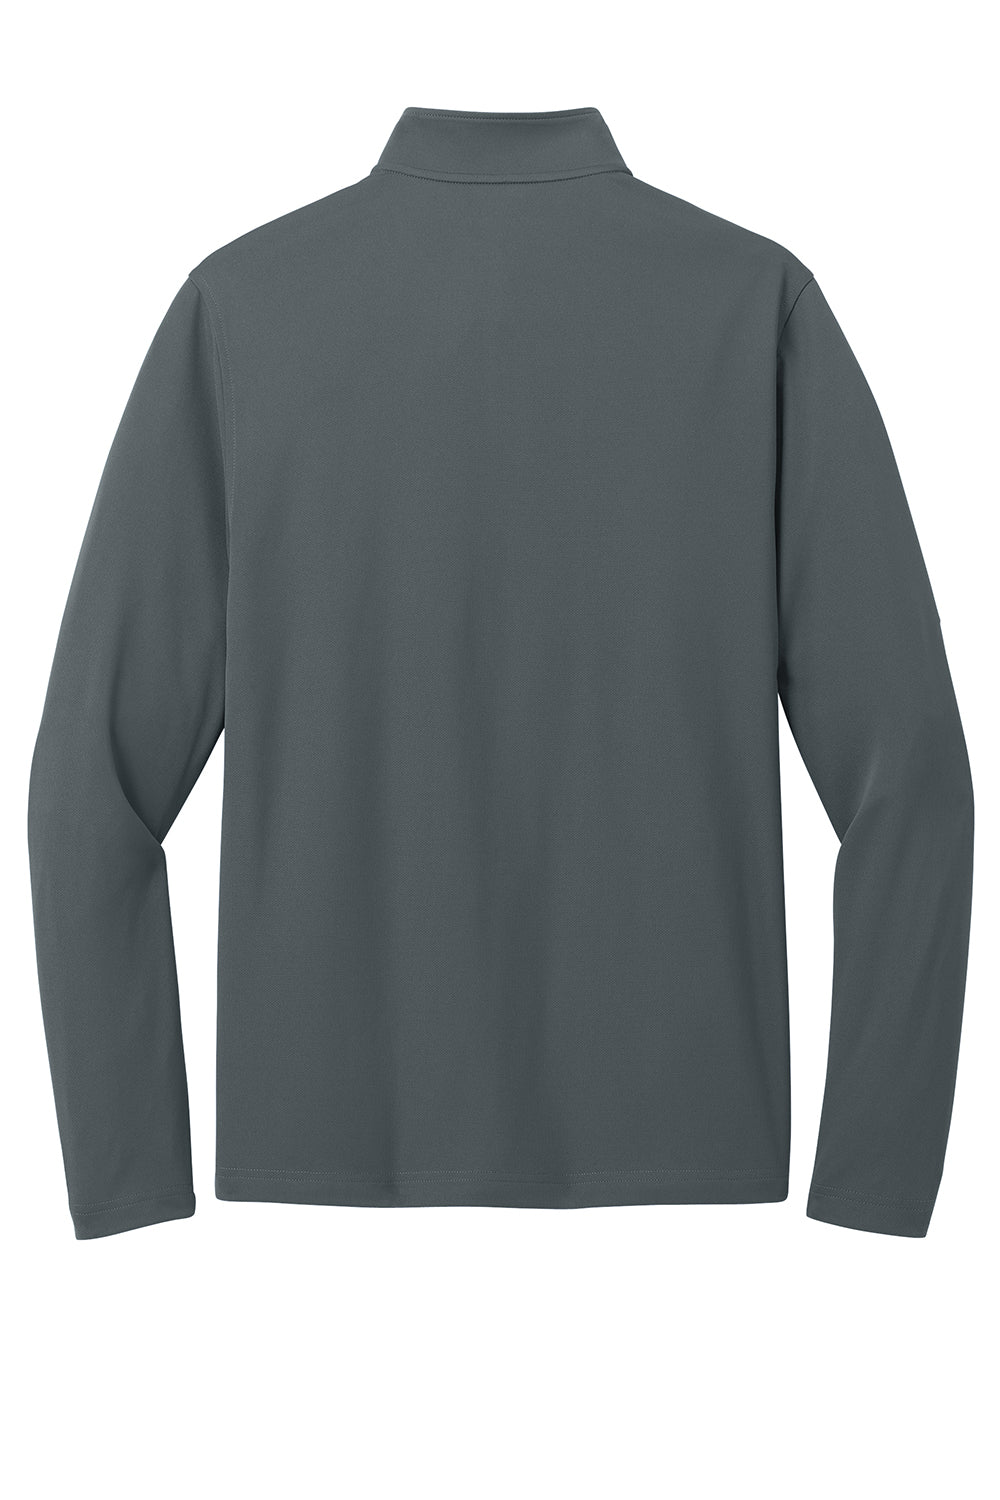 Port Authority K112 Mens Dry Zone UV Micro Mesh 1/4 Zip Sweatshirt Graphite Grey Flat Back